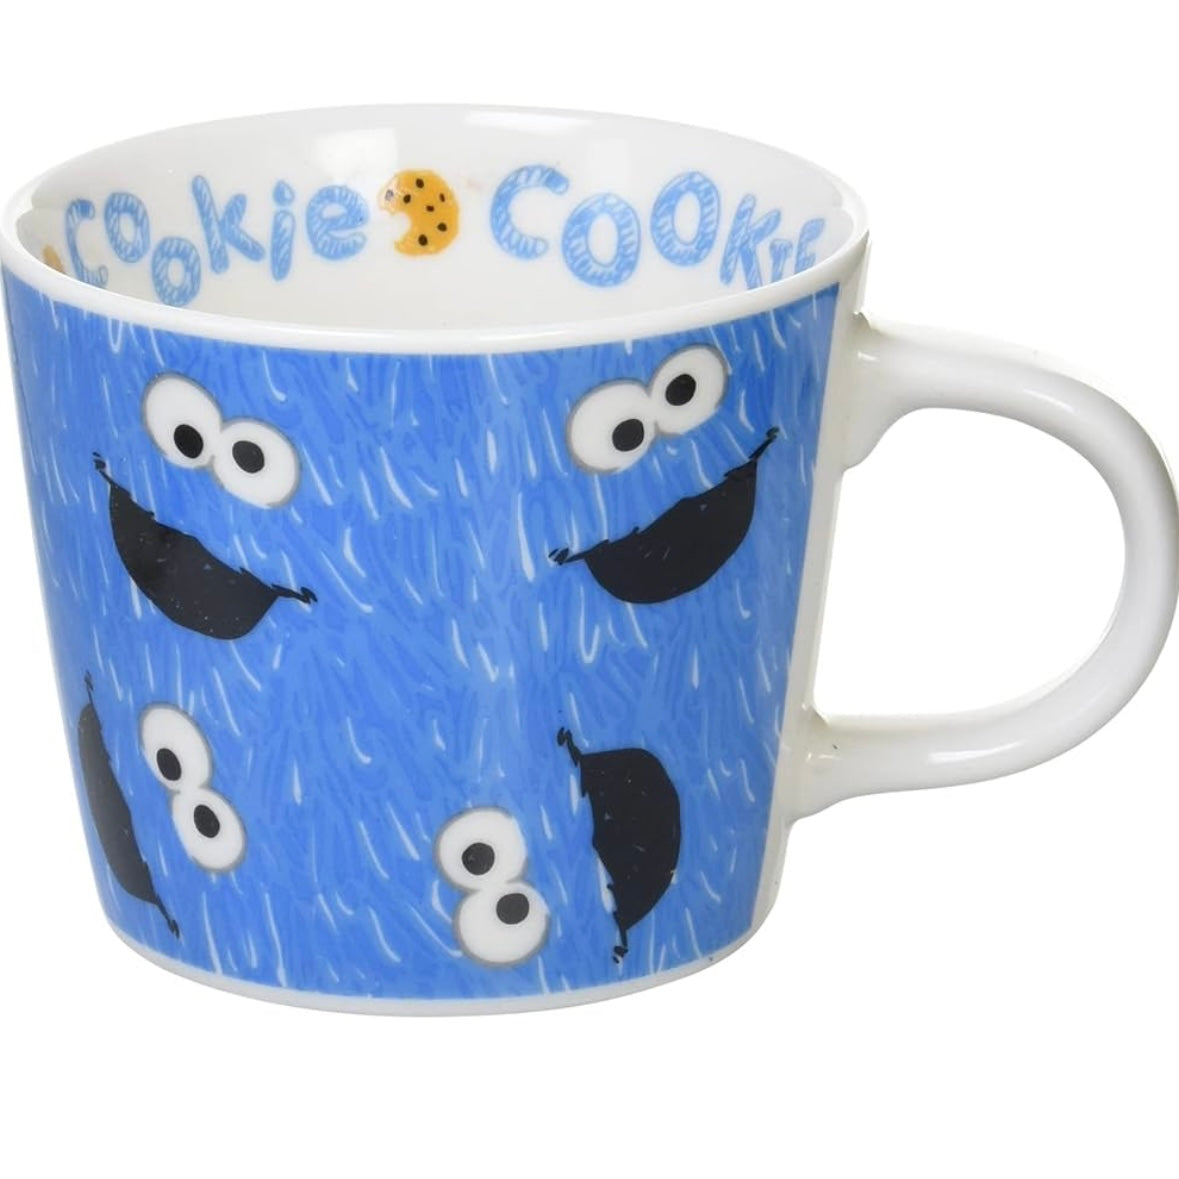 【現貨】芝麻街 Elmo & Cookie Monster 塗鴉風瓷杯